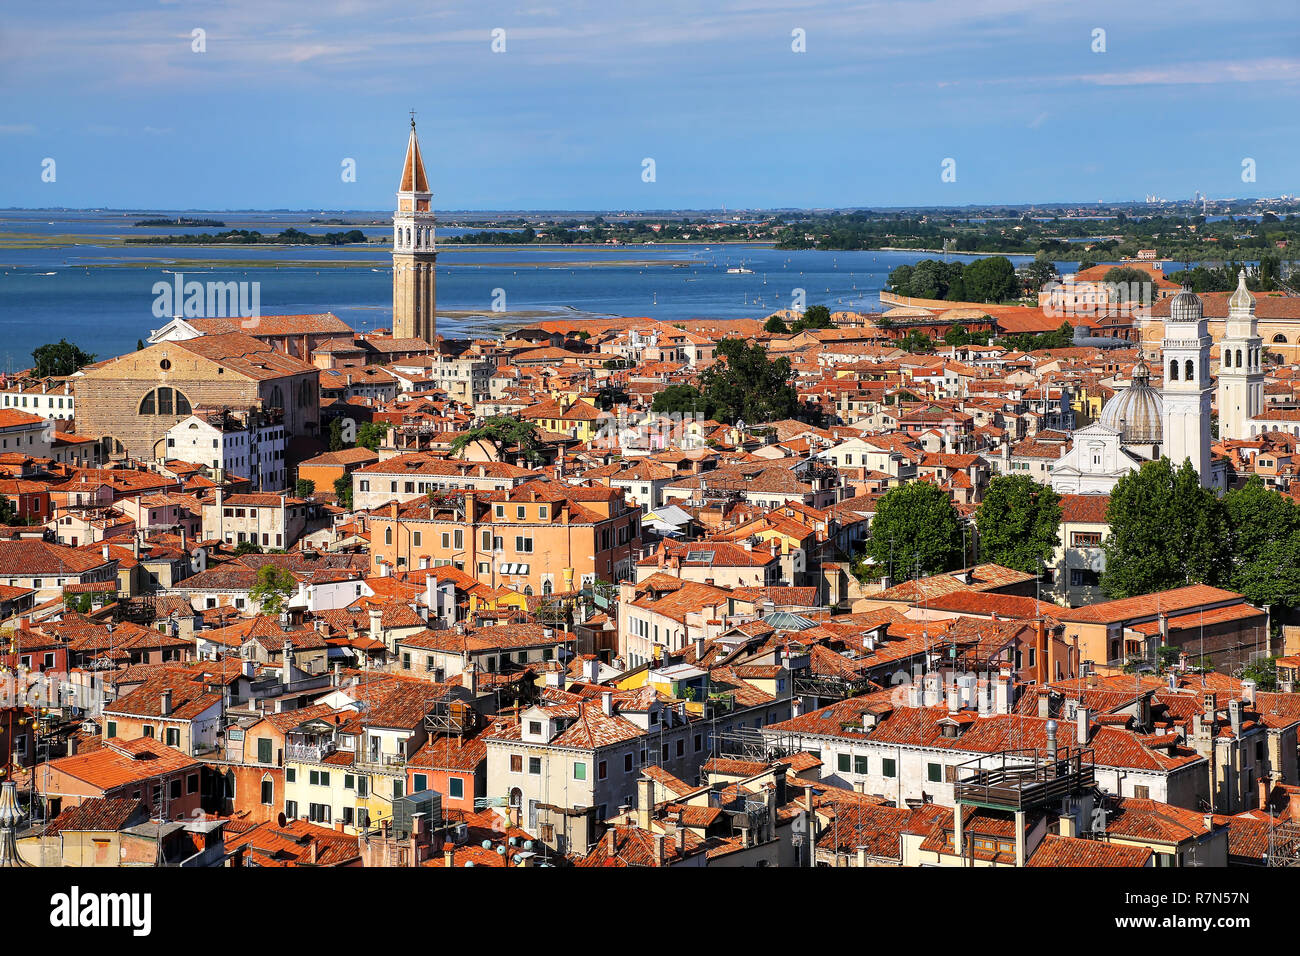 Toits de Venise vu de la Campanile, Italie. Venise est l'une des destinations touristiques les plus importants dans le monde entier pour son célèbre art Banque D'Images